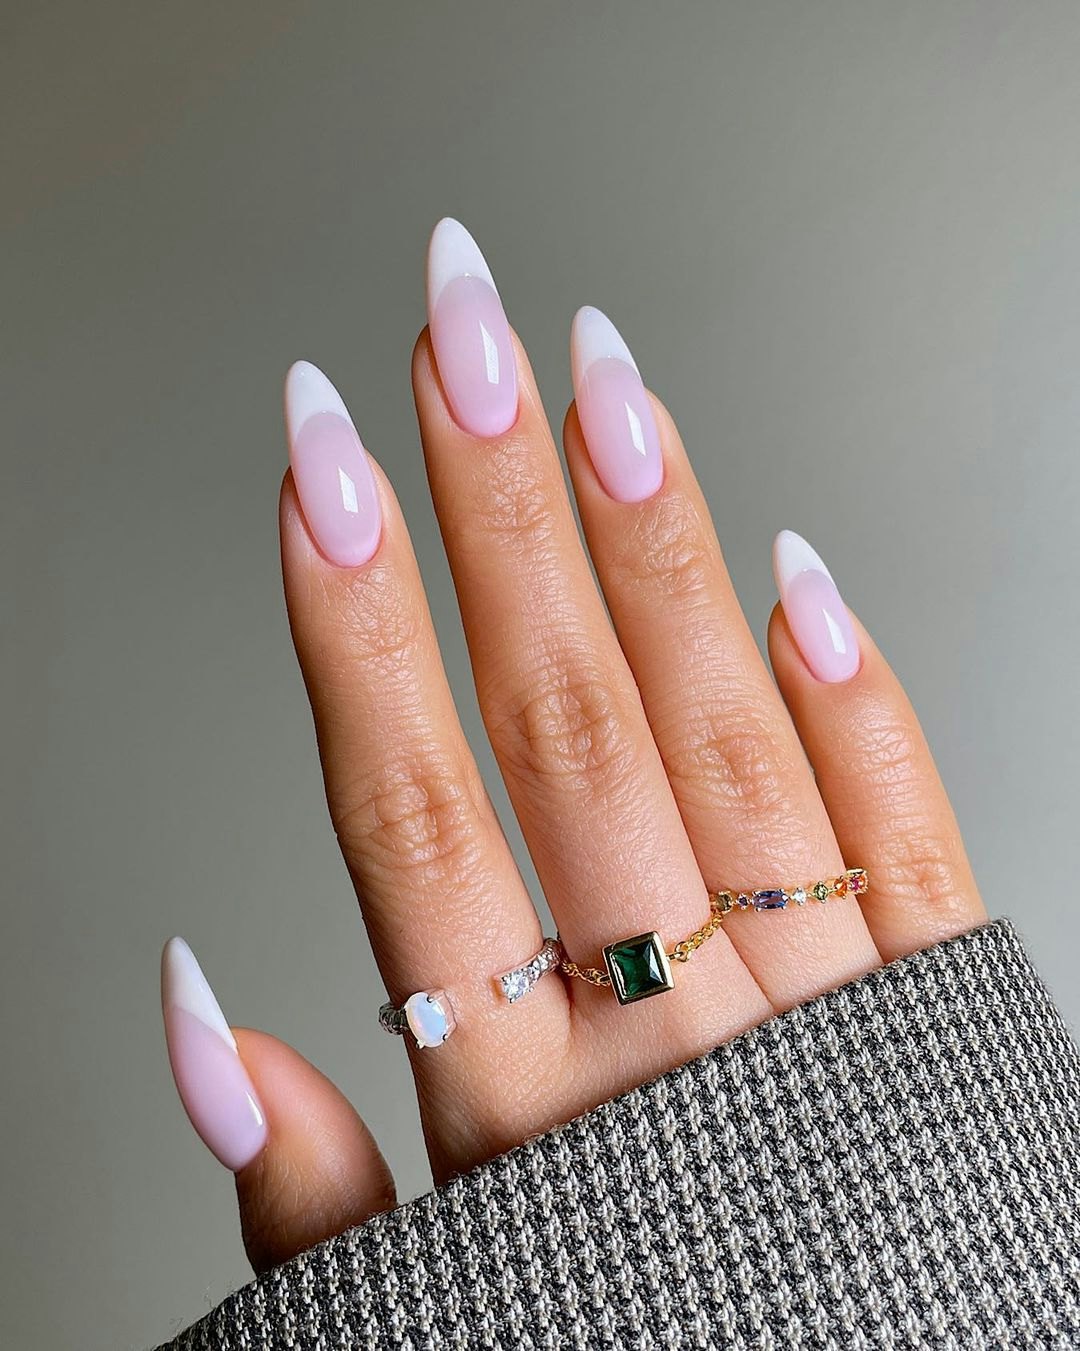 French Manicure Gel Nails Tutorial | Semilac UV Gel Nail Polish